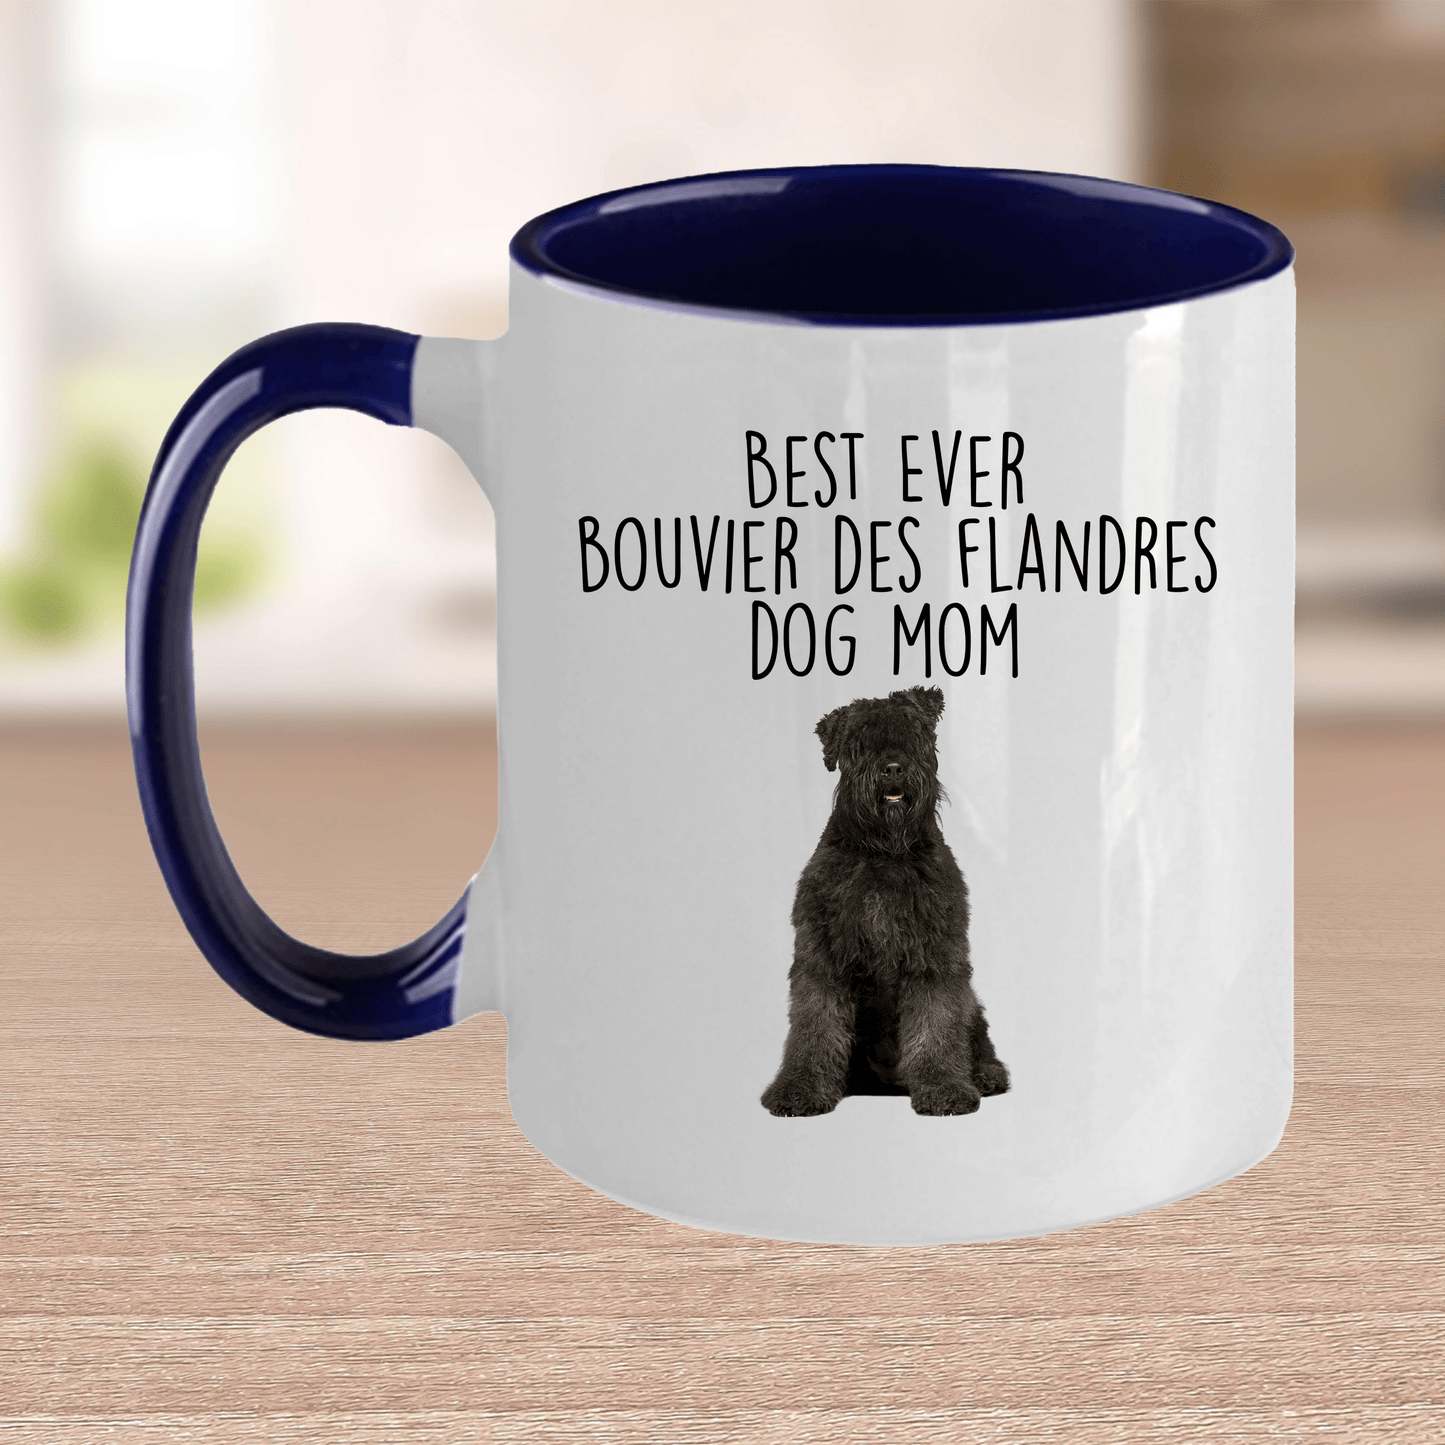 Best Ever Bouvier des Flandres Dog Mom Ceramic Coffee Mug